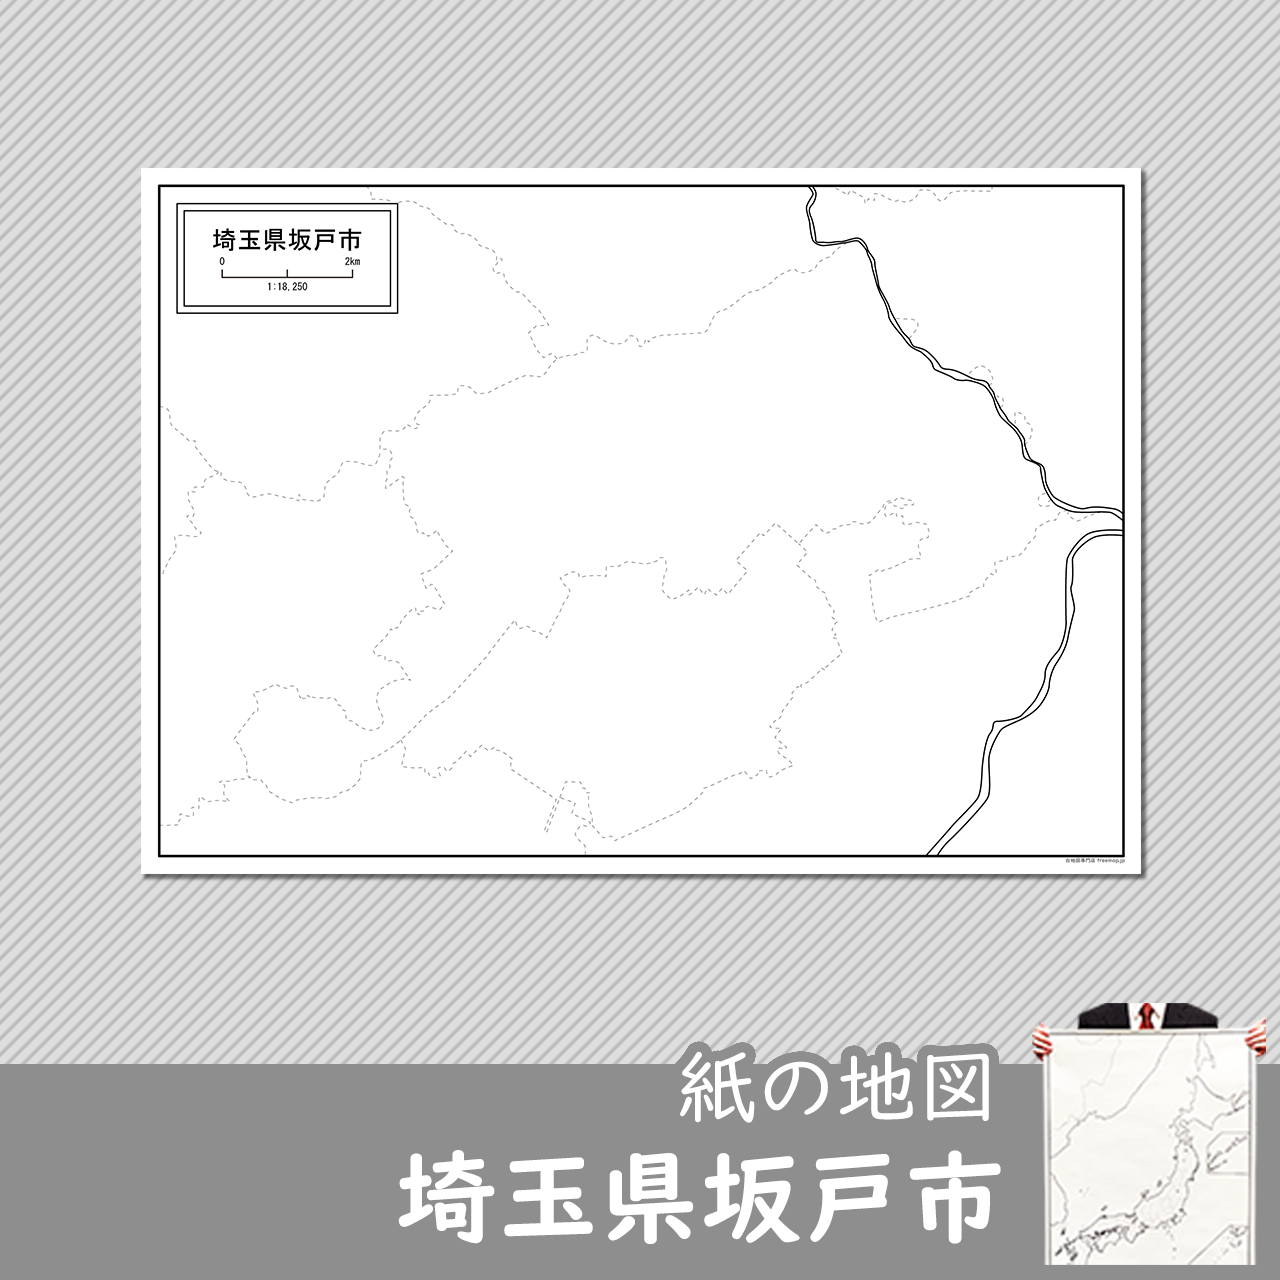 坂戸市の紙の白地図のサムネイル